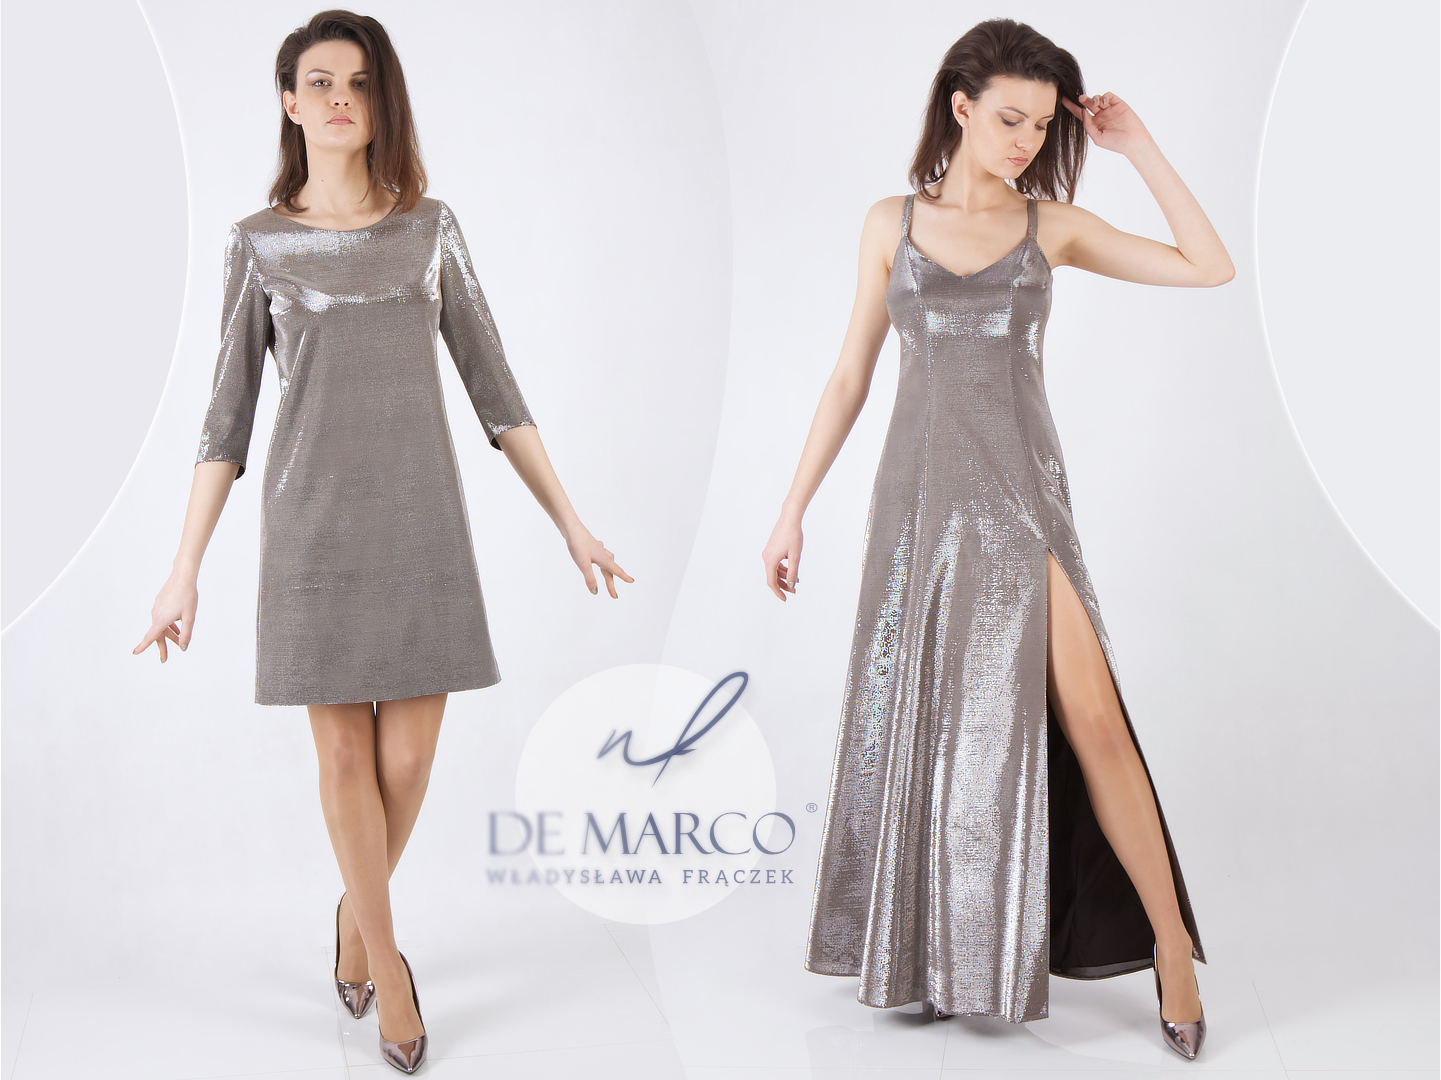 Zmysłowa Elegancja: Luksusowe suknie wieczorowe De Marco z metalicznym połyskiem srebra